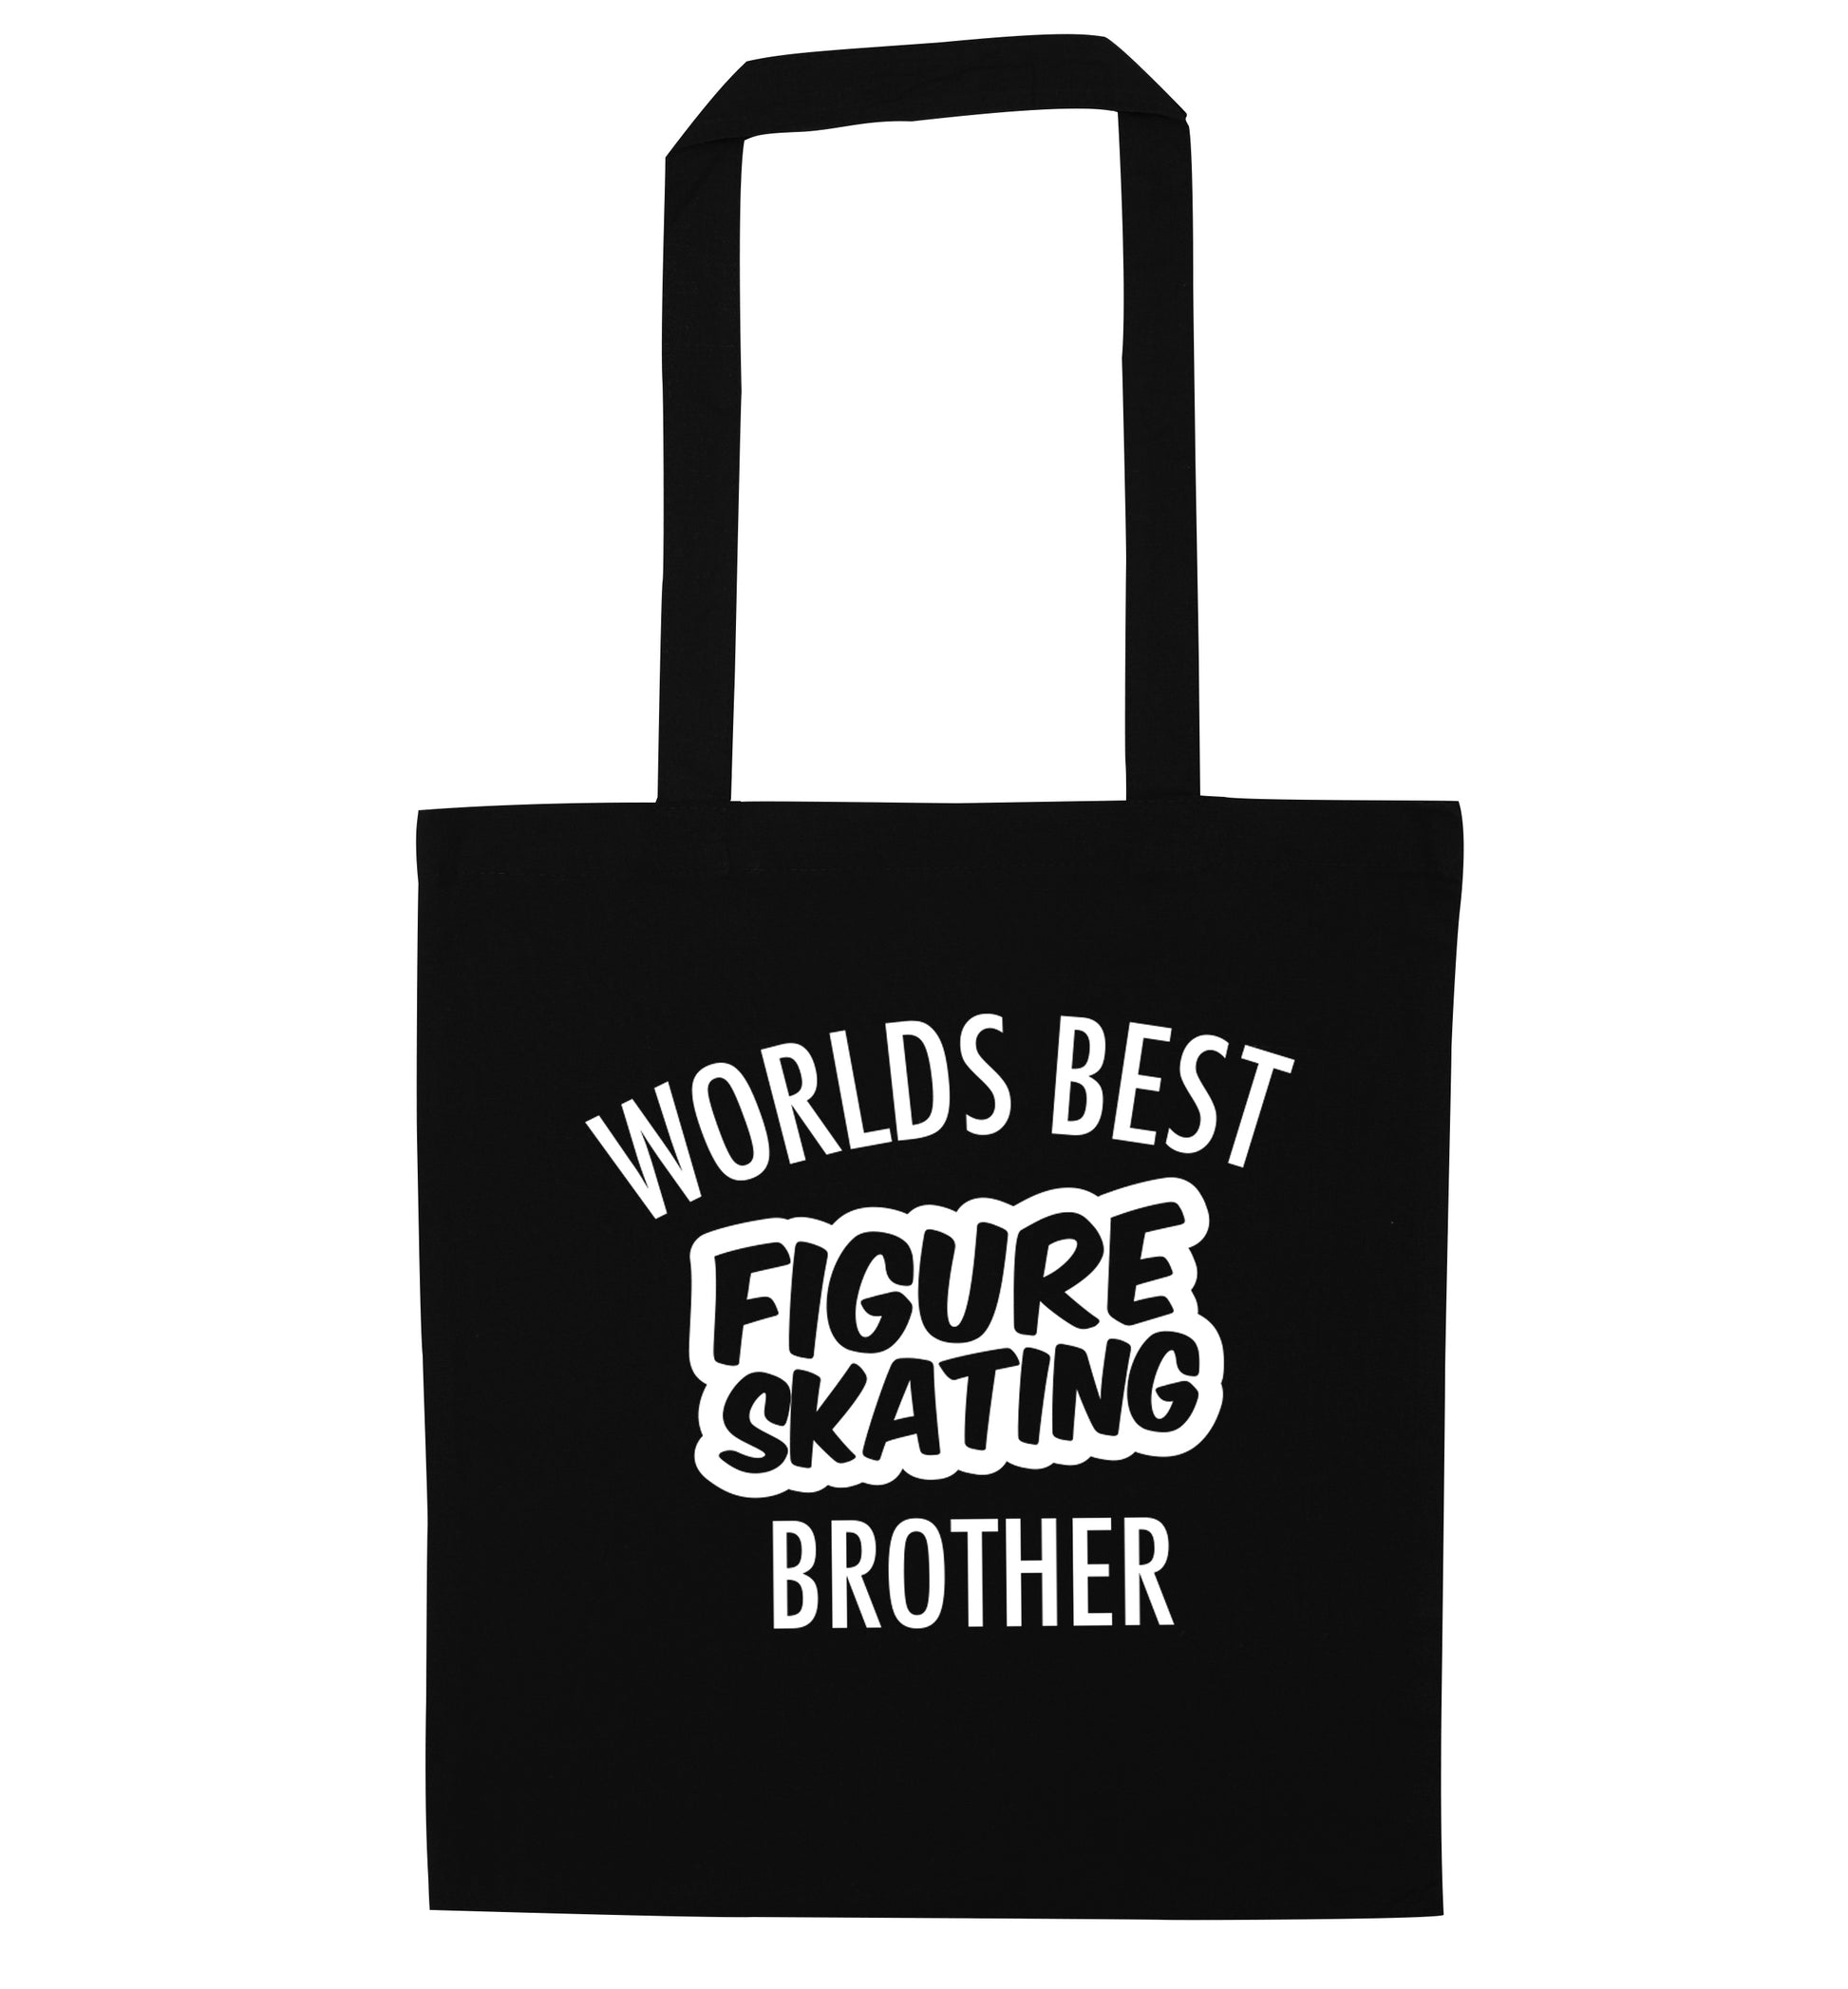 Worlds best figure skating brother black tote bag